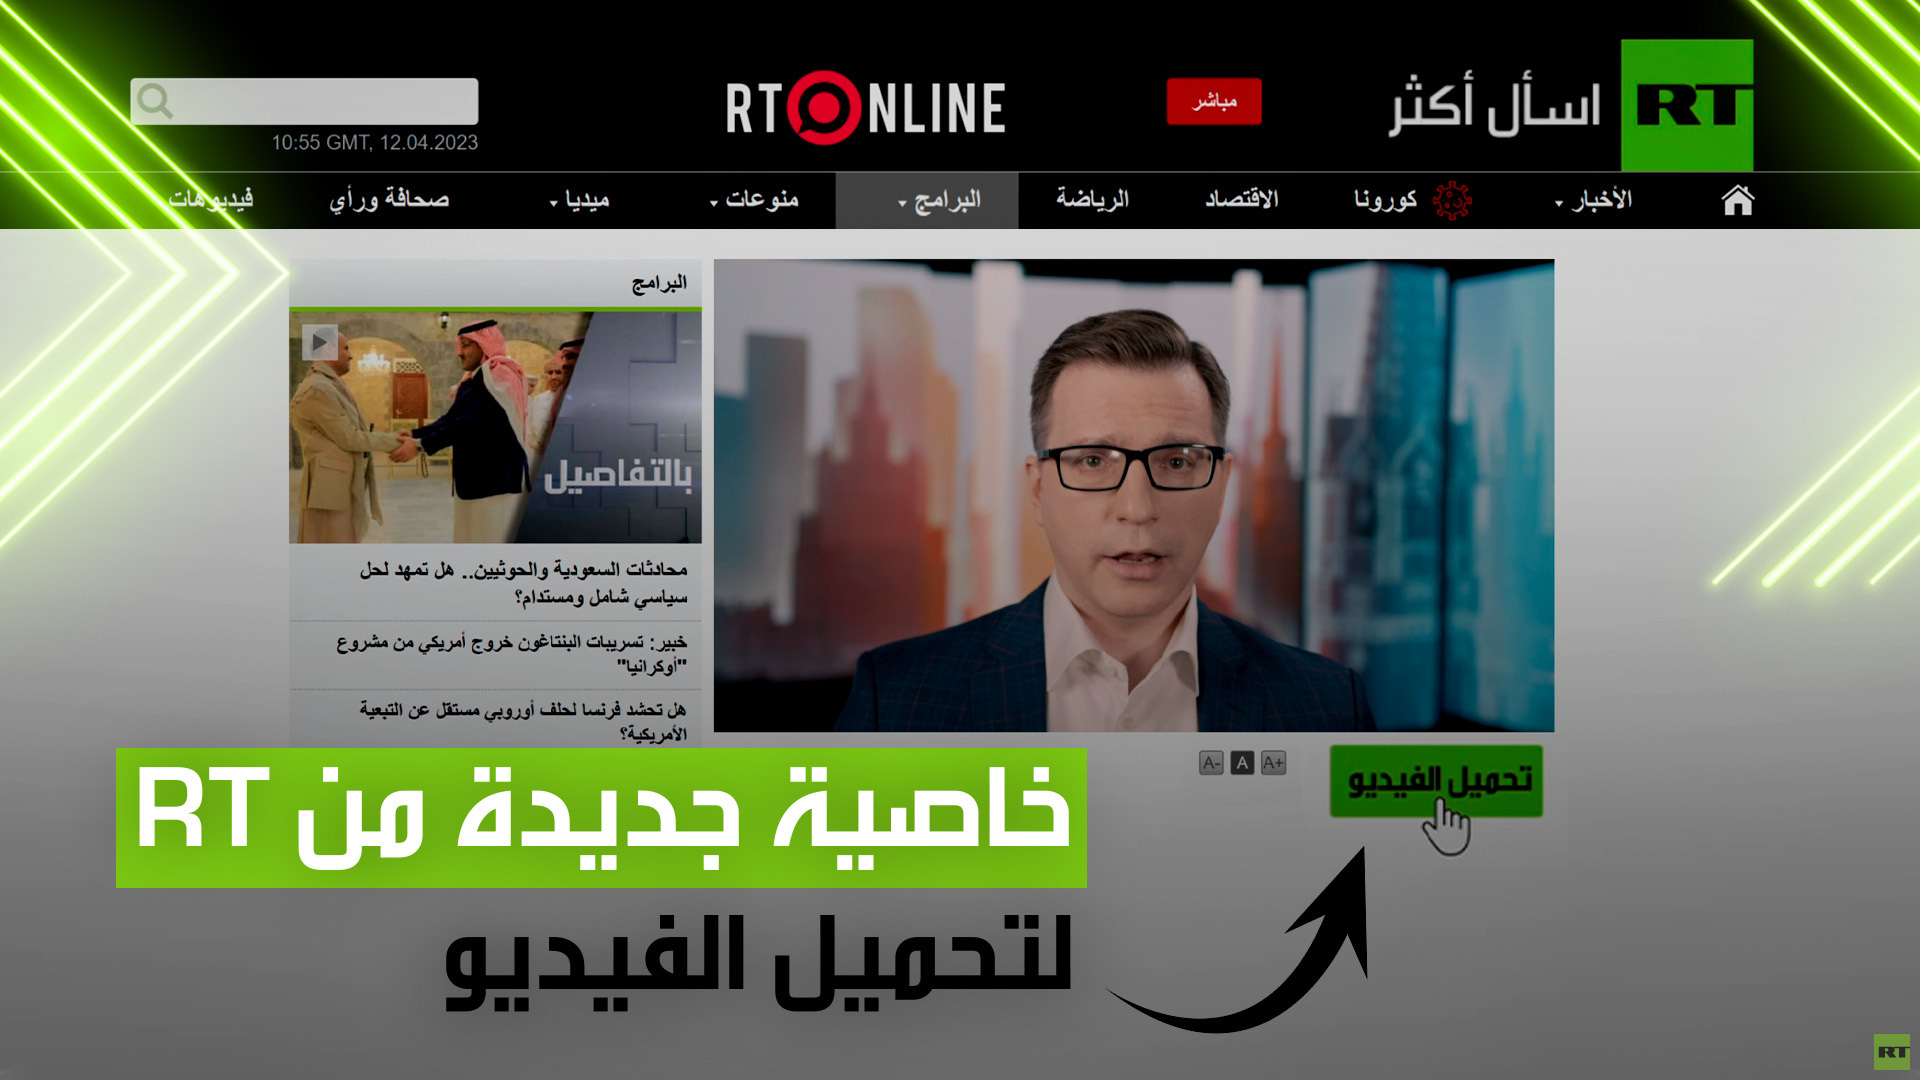 موقع RT العربية يضيف خاصية جديدة لتحميل الفيديو